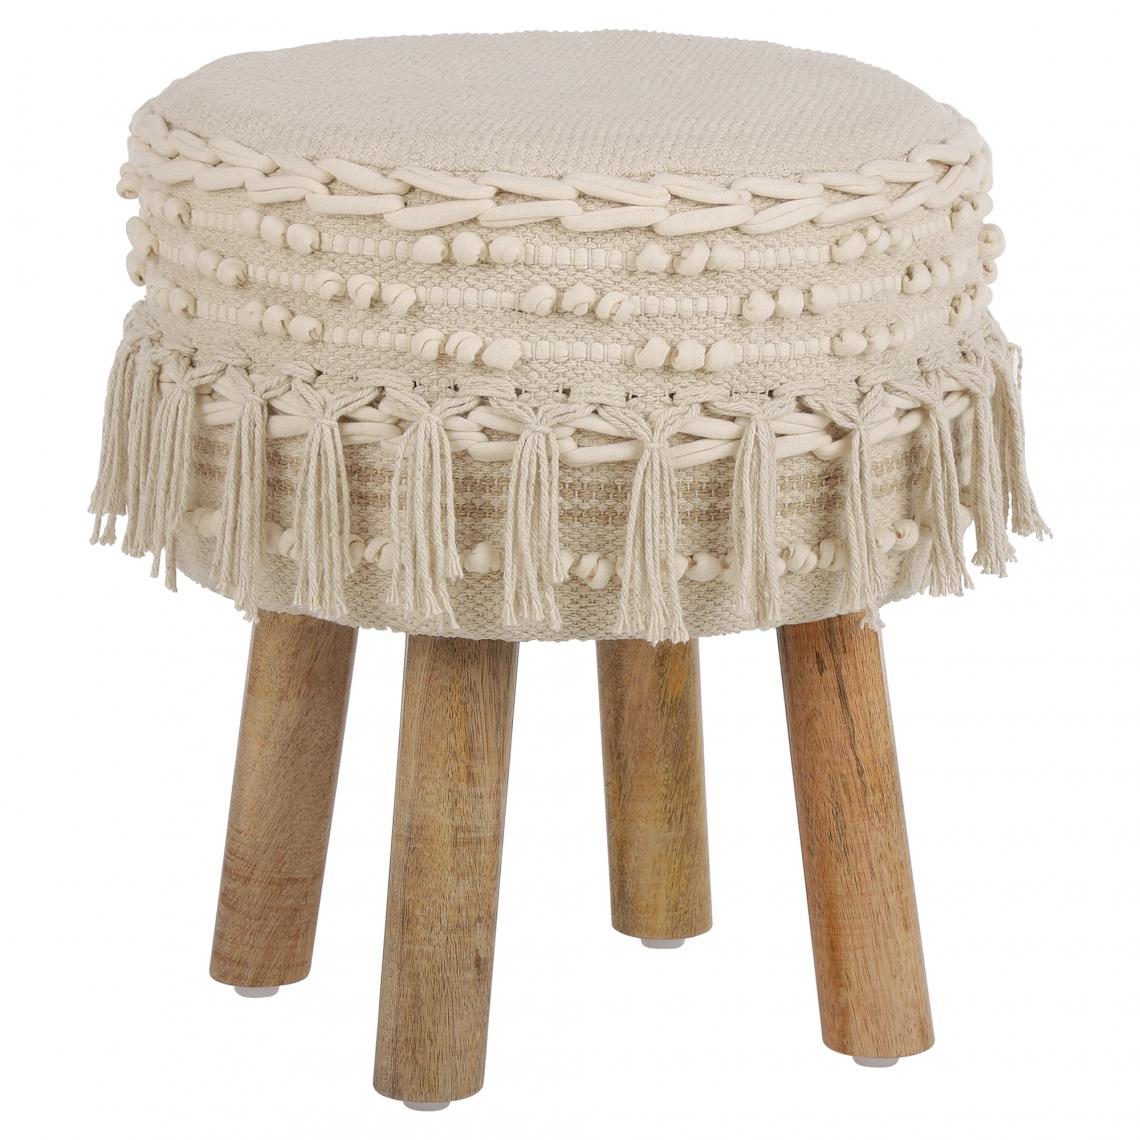 Womo-design - Tabouret d'entrée en bois rond siége ottoman rembourré coussin d'assise en blanc - Tabourets